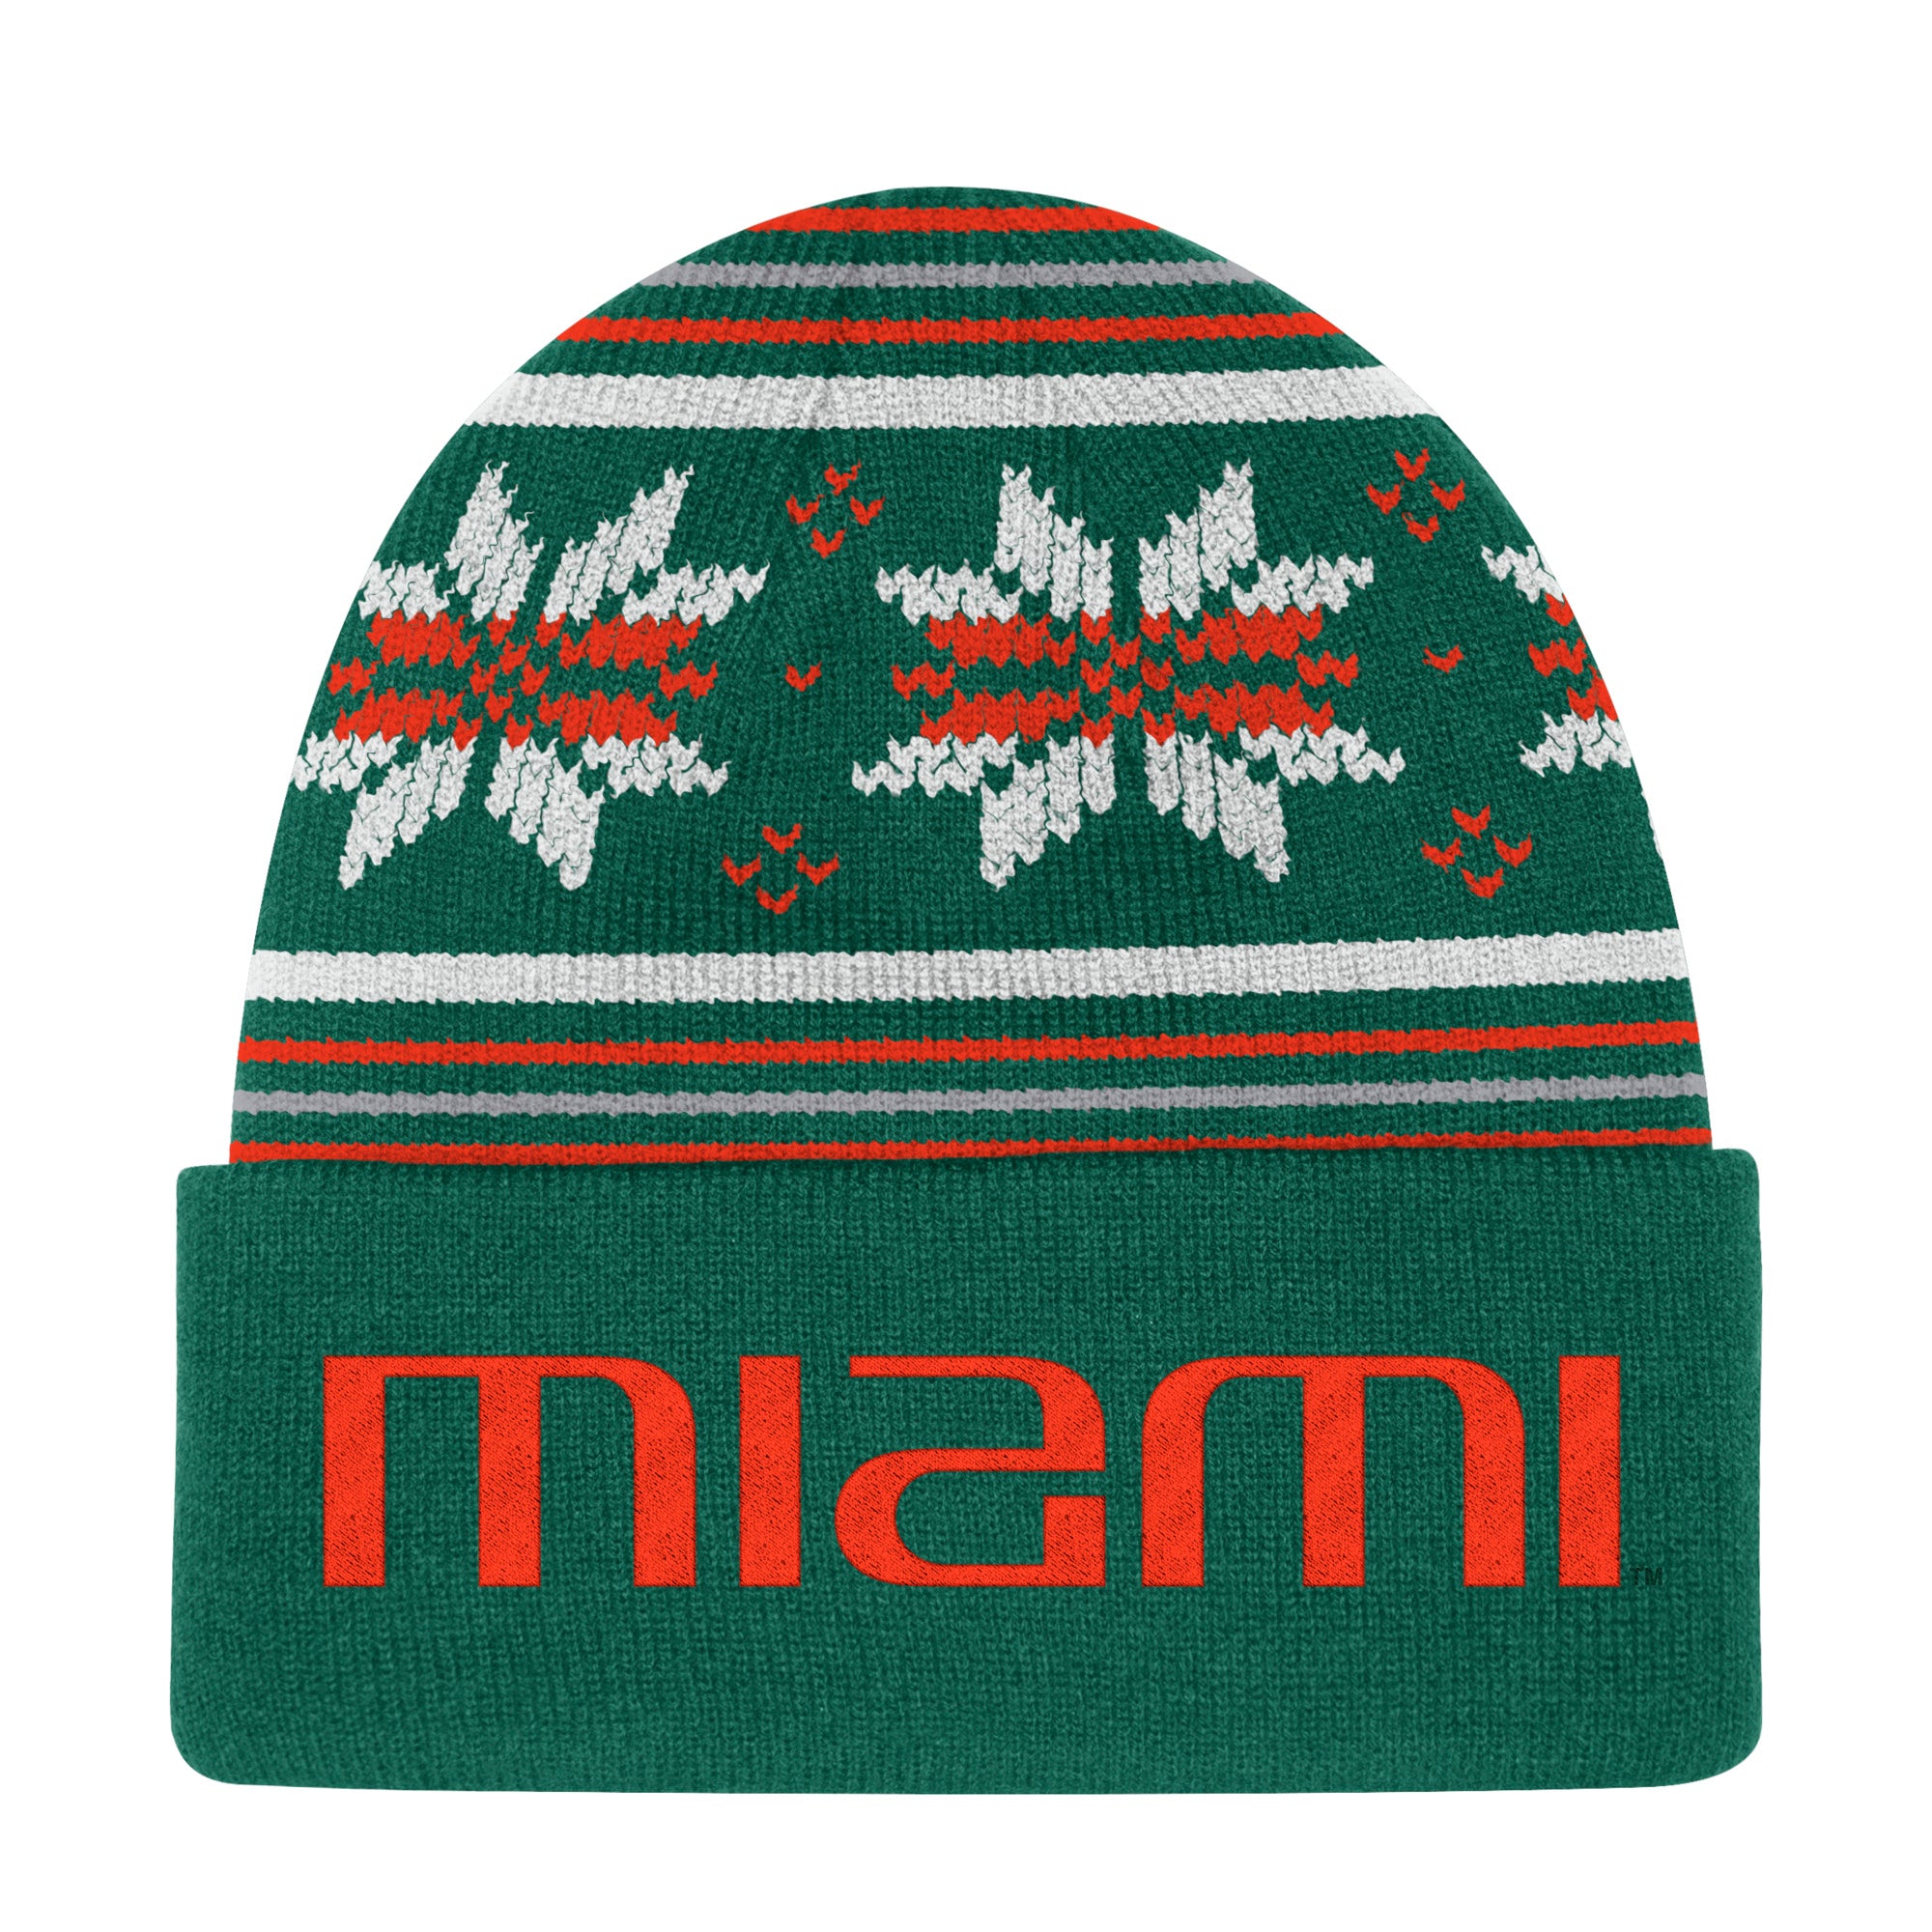 Miami Hurricanes adidas Head Logo Cuffed Beanie